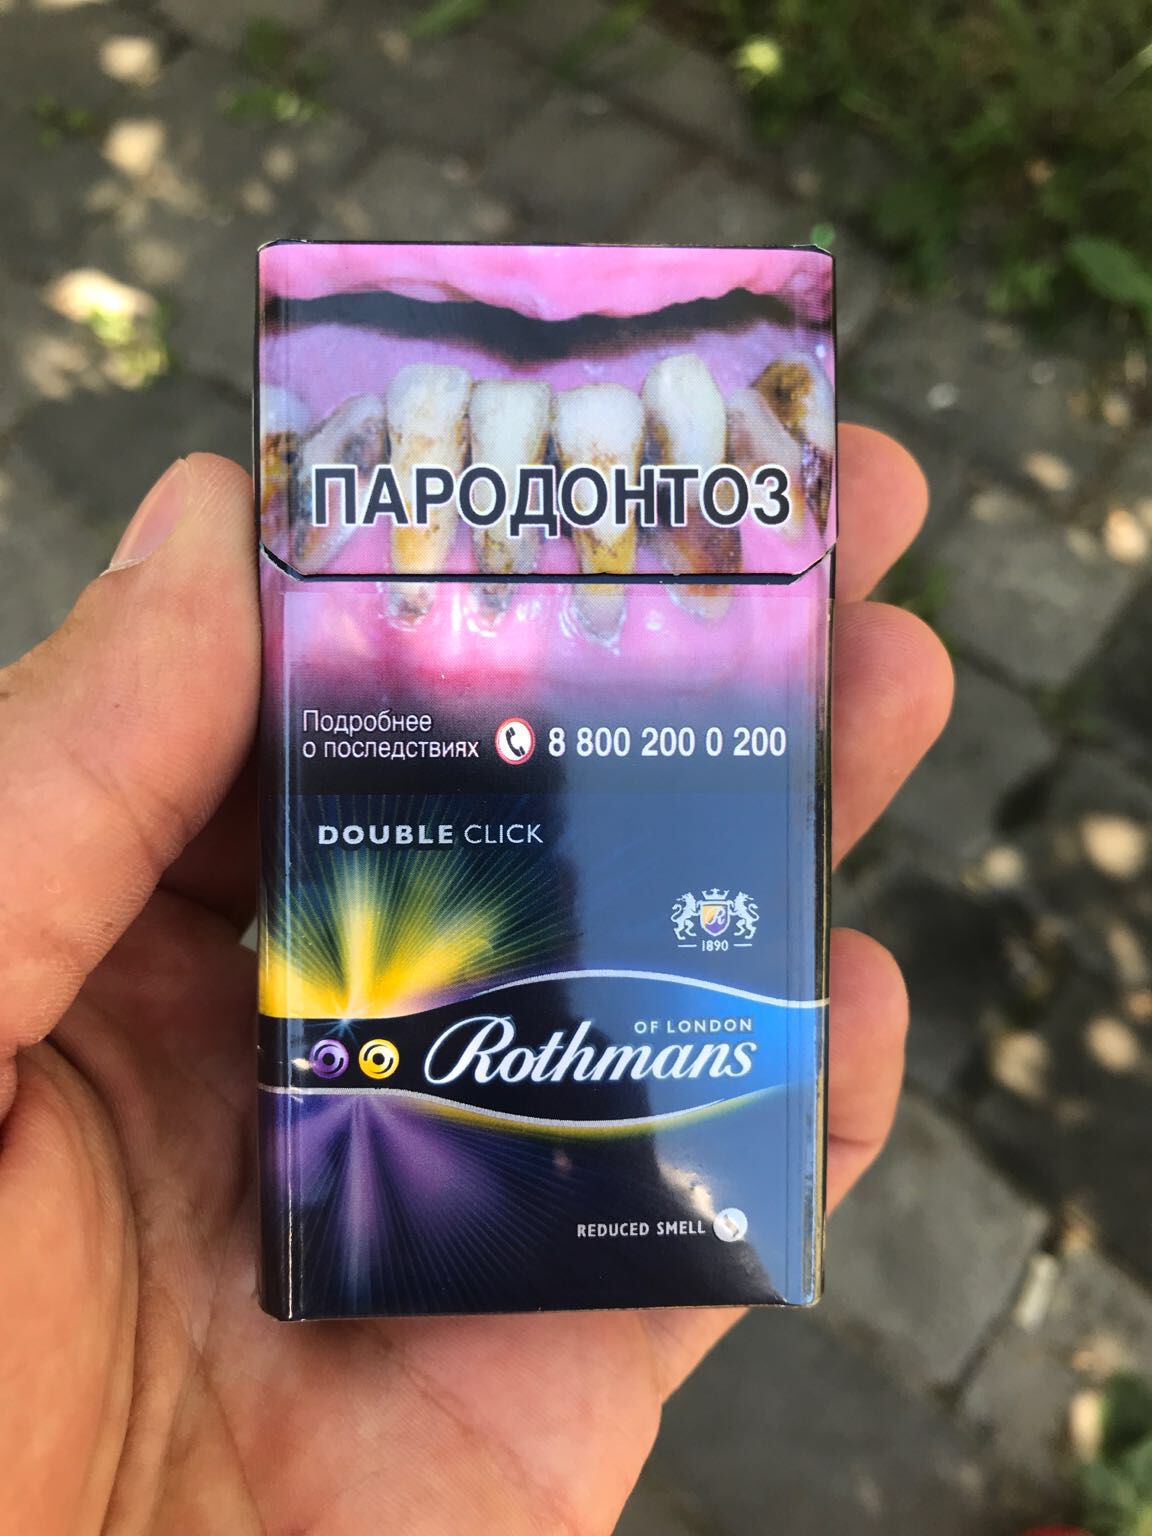 Сигареты ротманс ассортимент с кнопкой вкусы фото